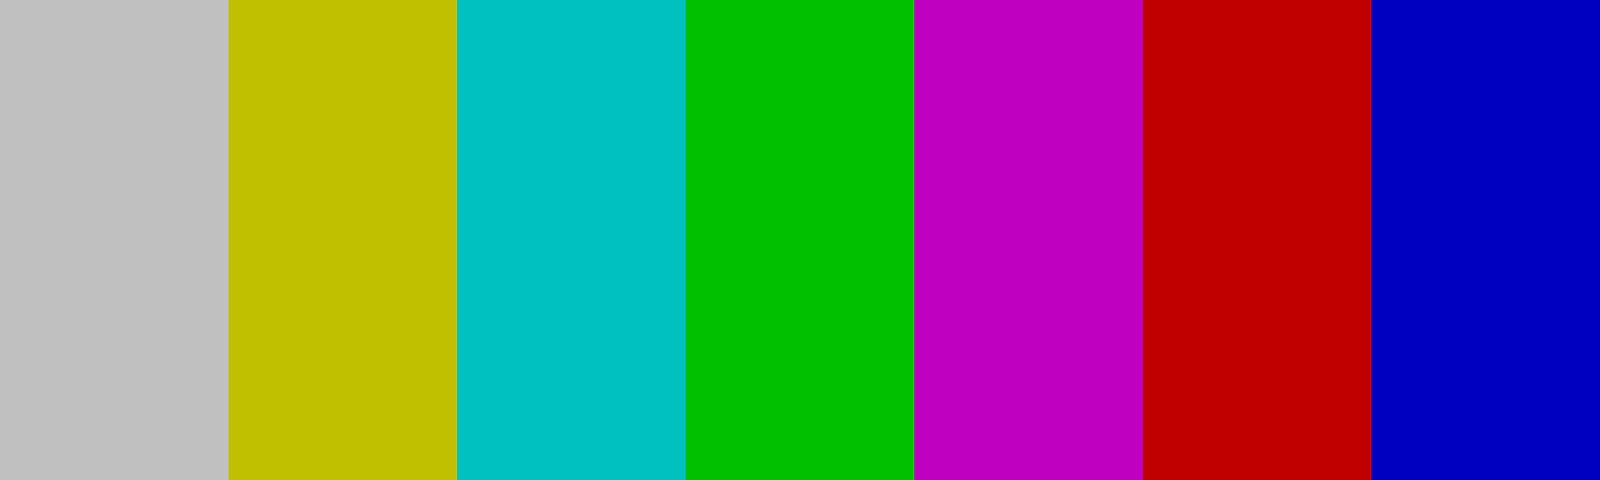 TV color test pattern